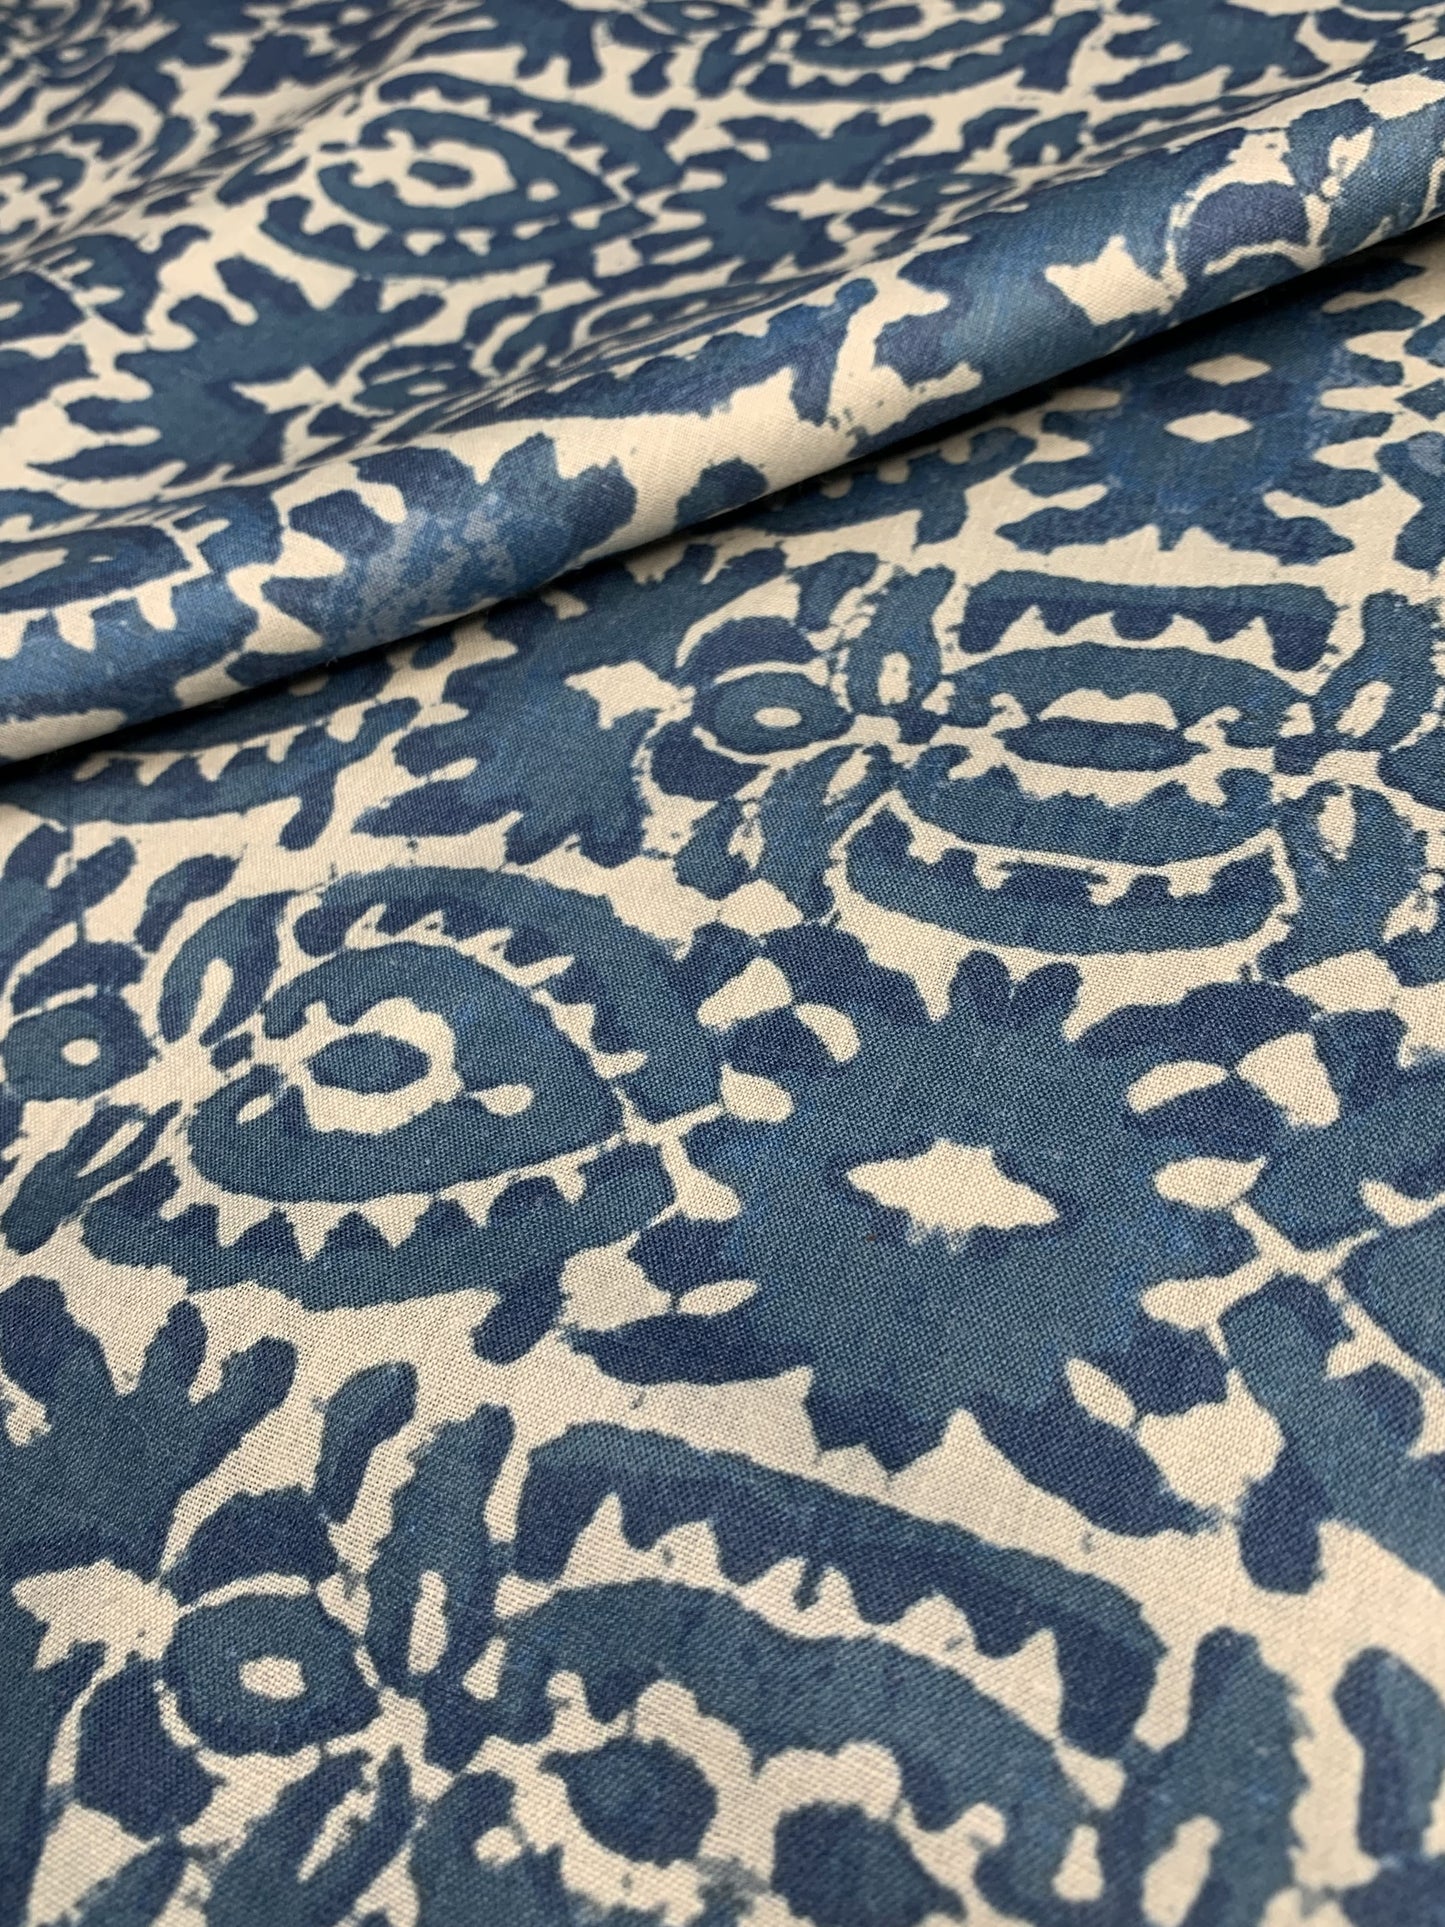 Premium Cobalt Blue Handblock Print Cotton Fabric